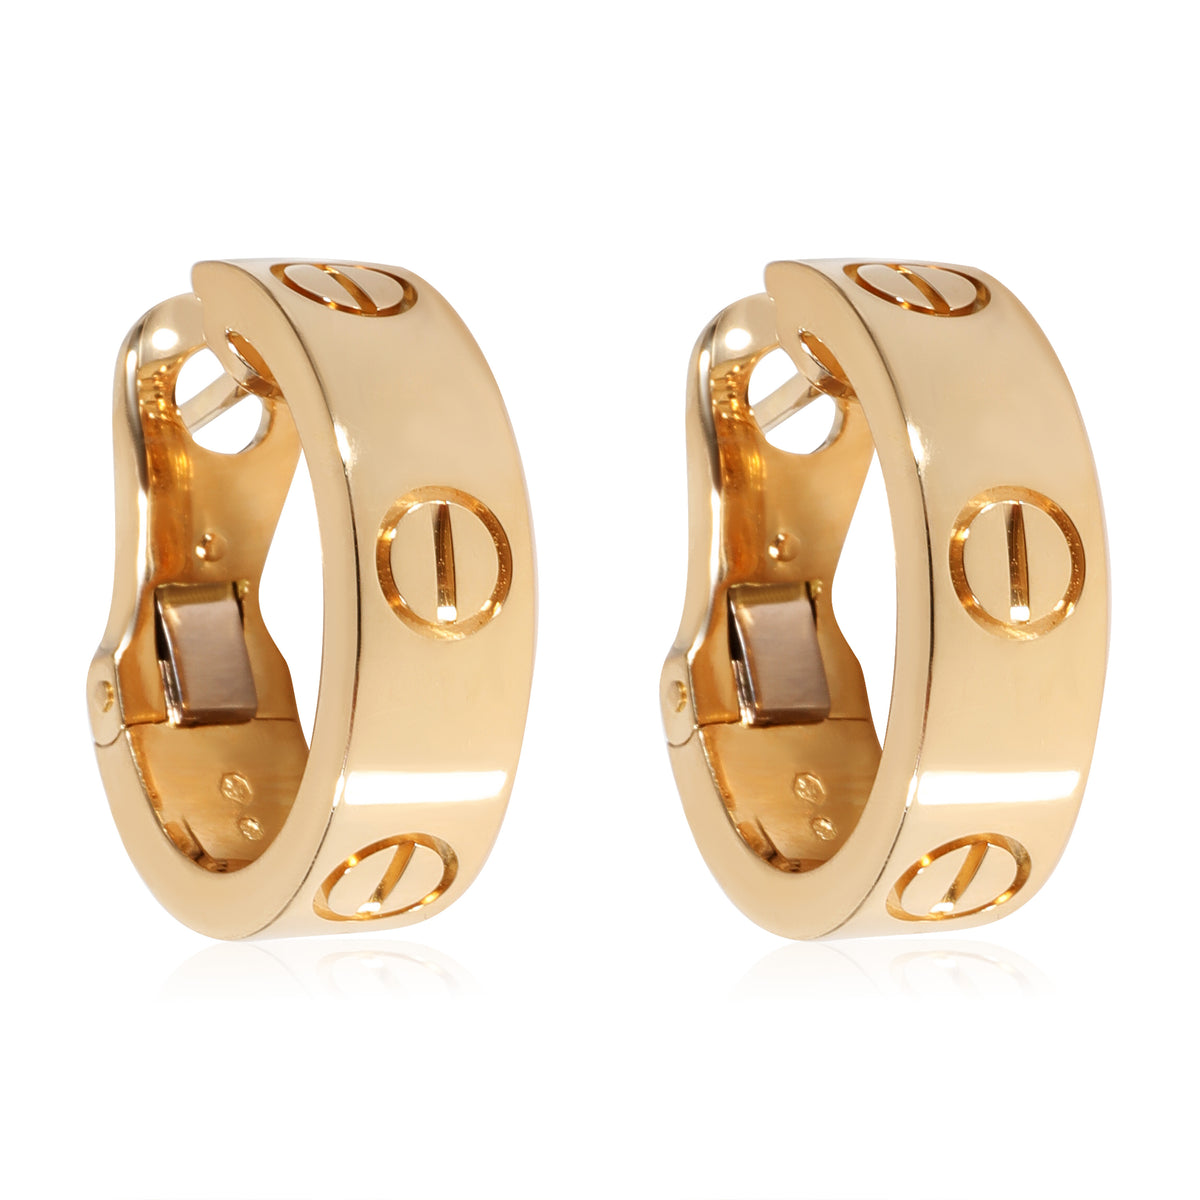 Cartier Love Earrings in 18k Yellow Gold